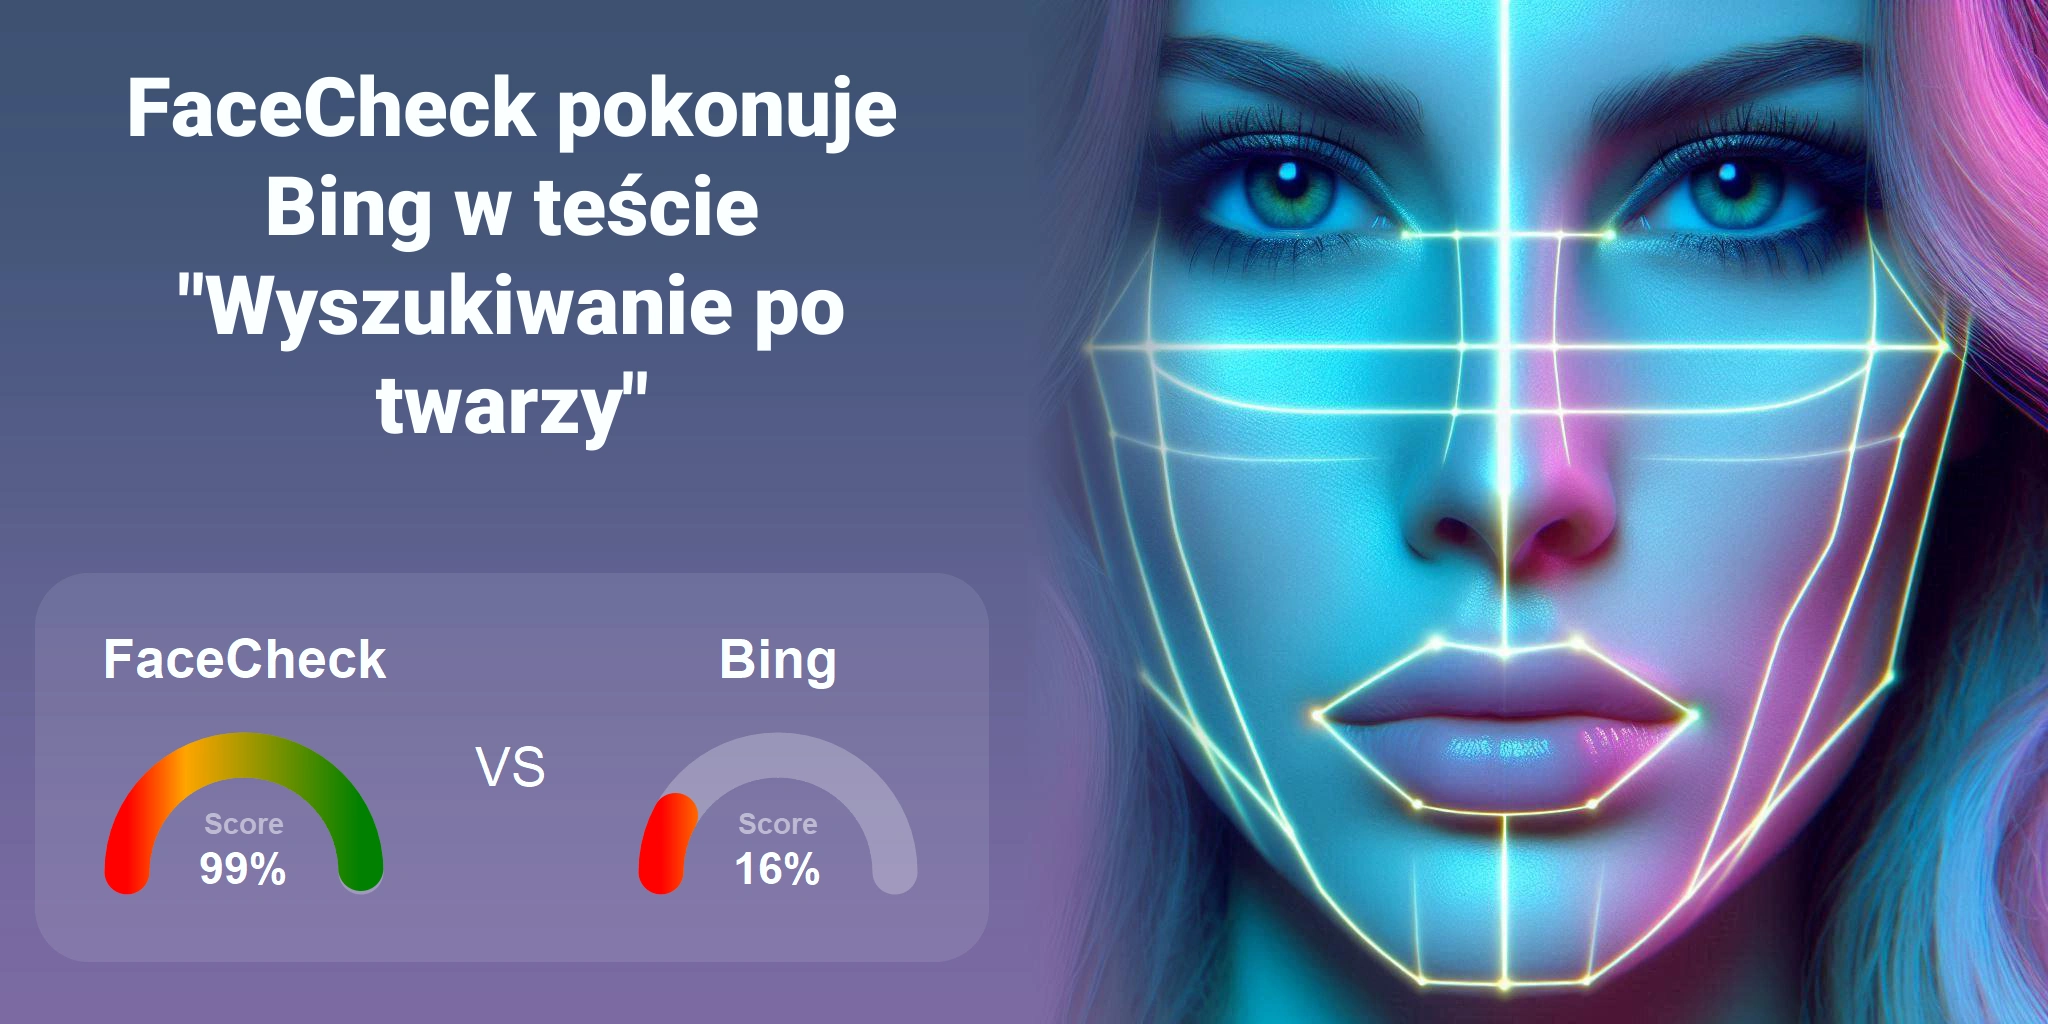 Który jest lepszy do wyszukiwania twarzy: <br>FaceCheck czy Bing?